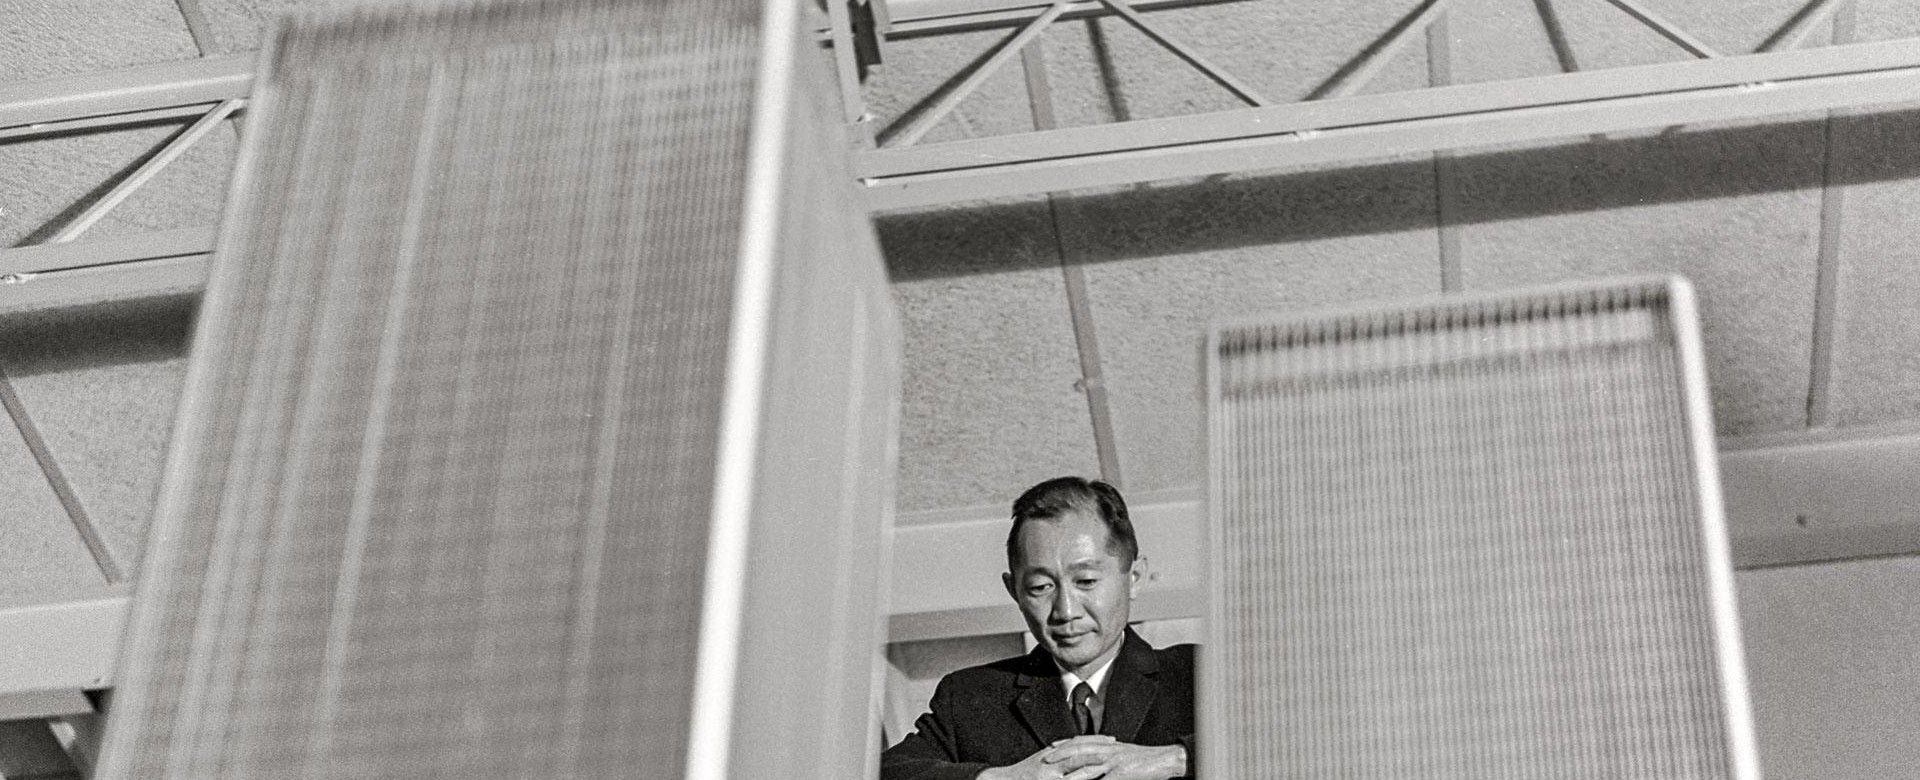 Минору Ямасаки архитект